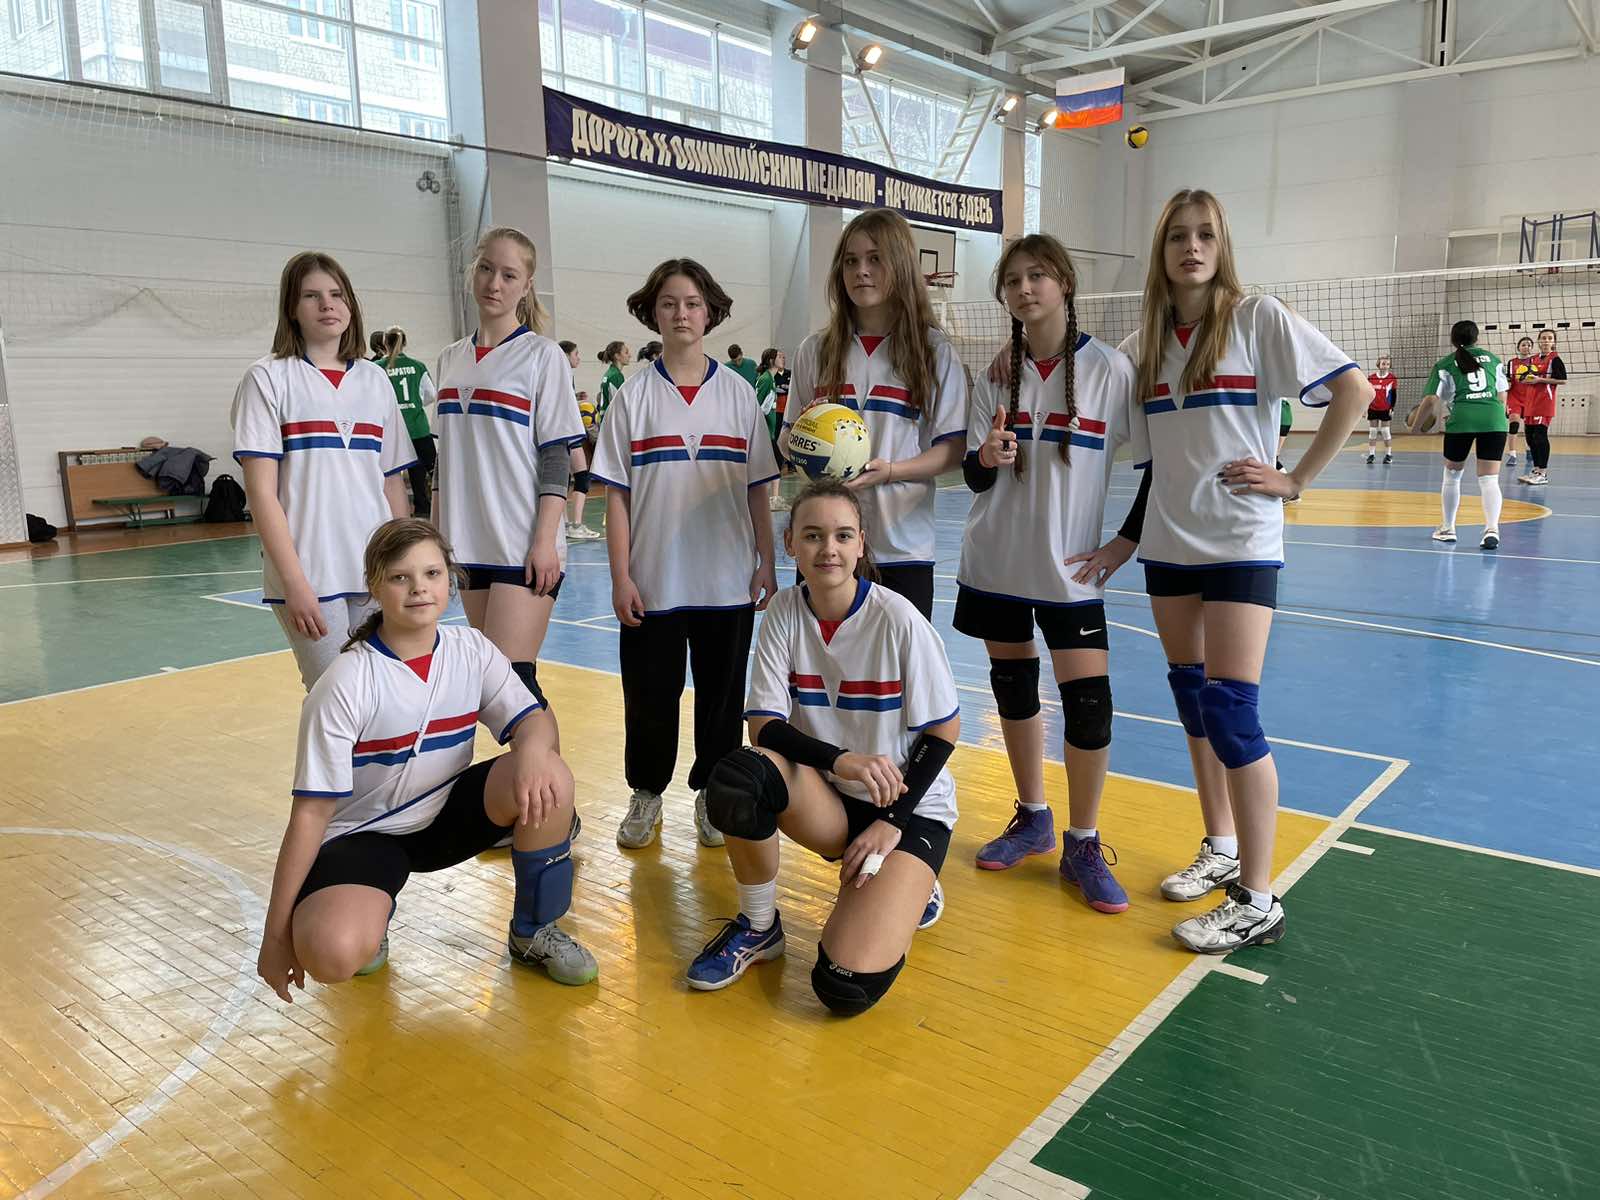 Команда лицея заняла 4 место на соревнованиях по волейболу  среди женских команд.